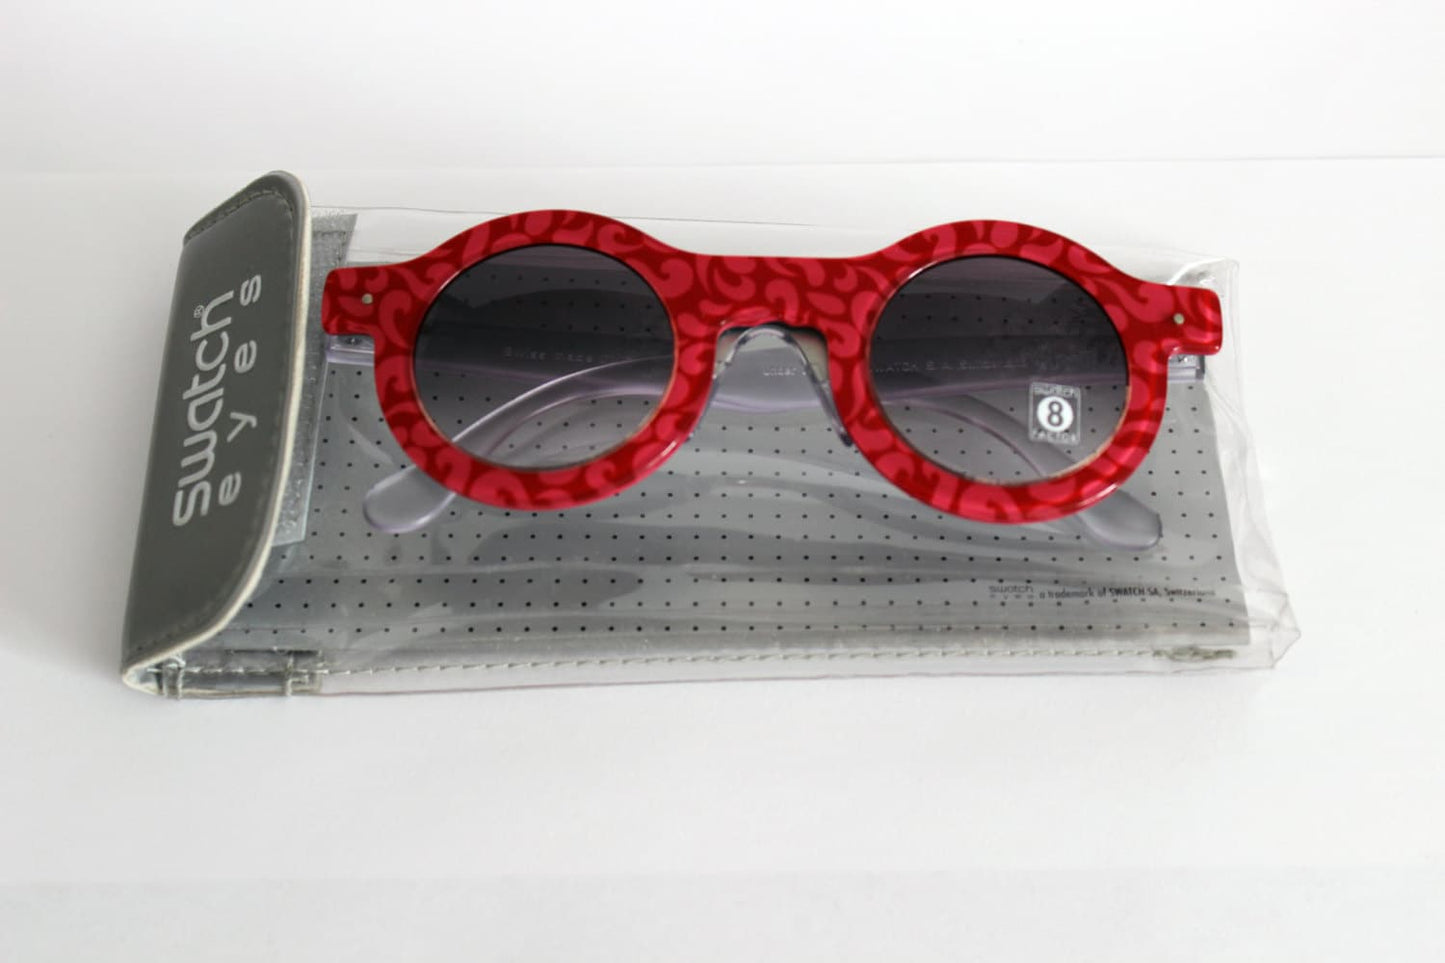 Swatch Sunglasses detachable - Mod. 813 027